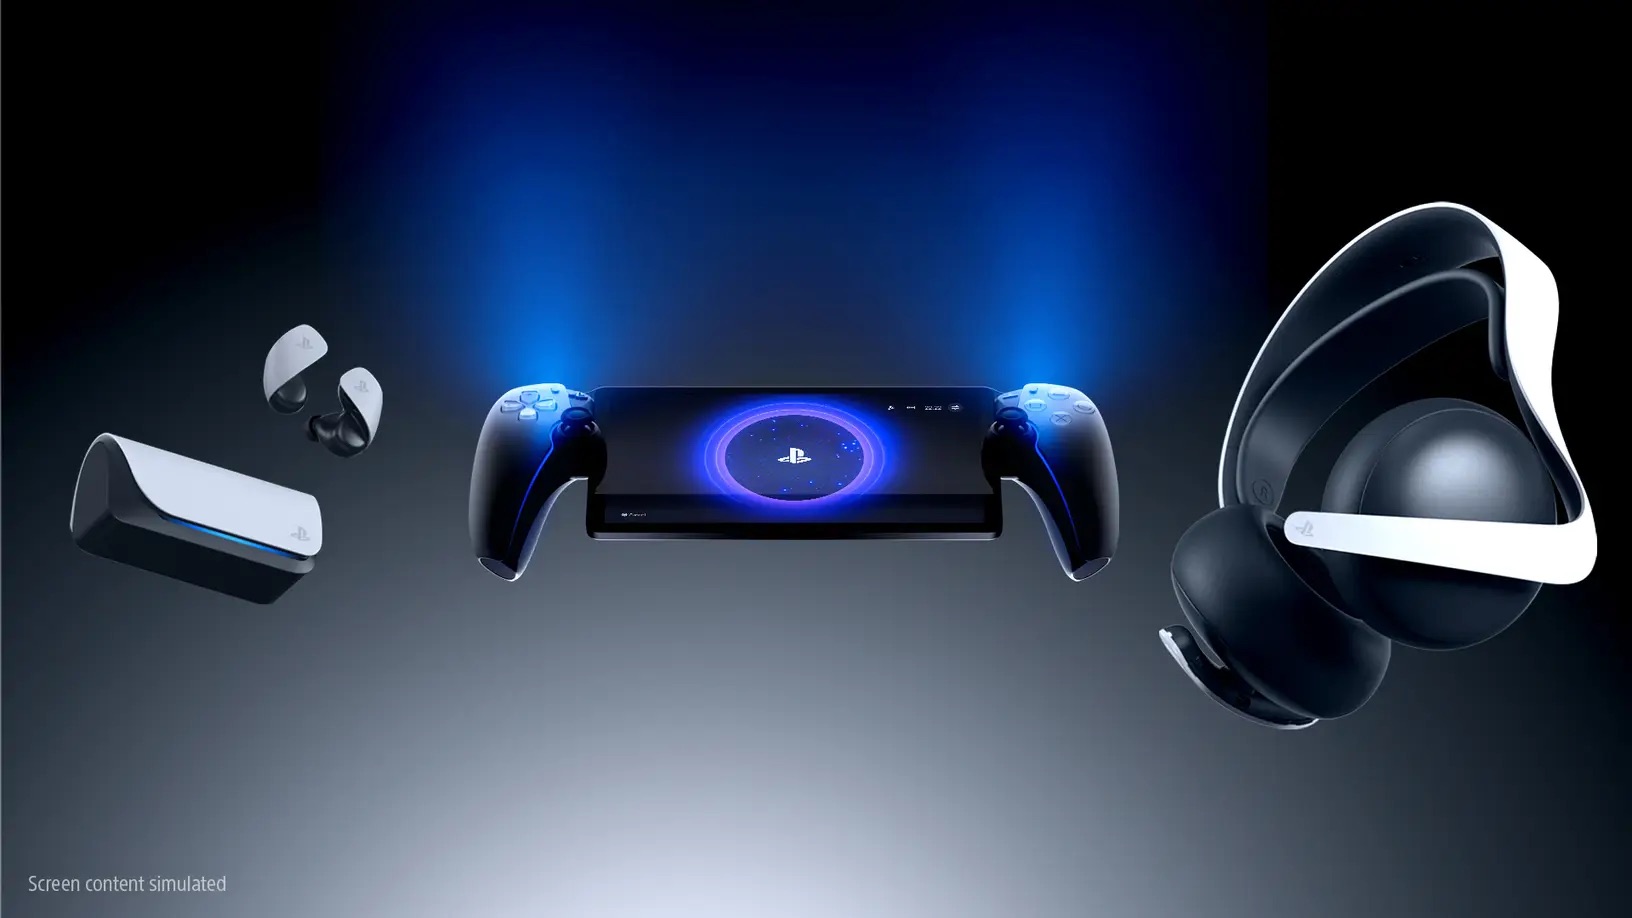 Sony công bố Playstation Portal - thiết bị phát trực tuyến game PS5 với giá $200